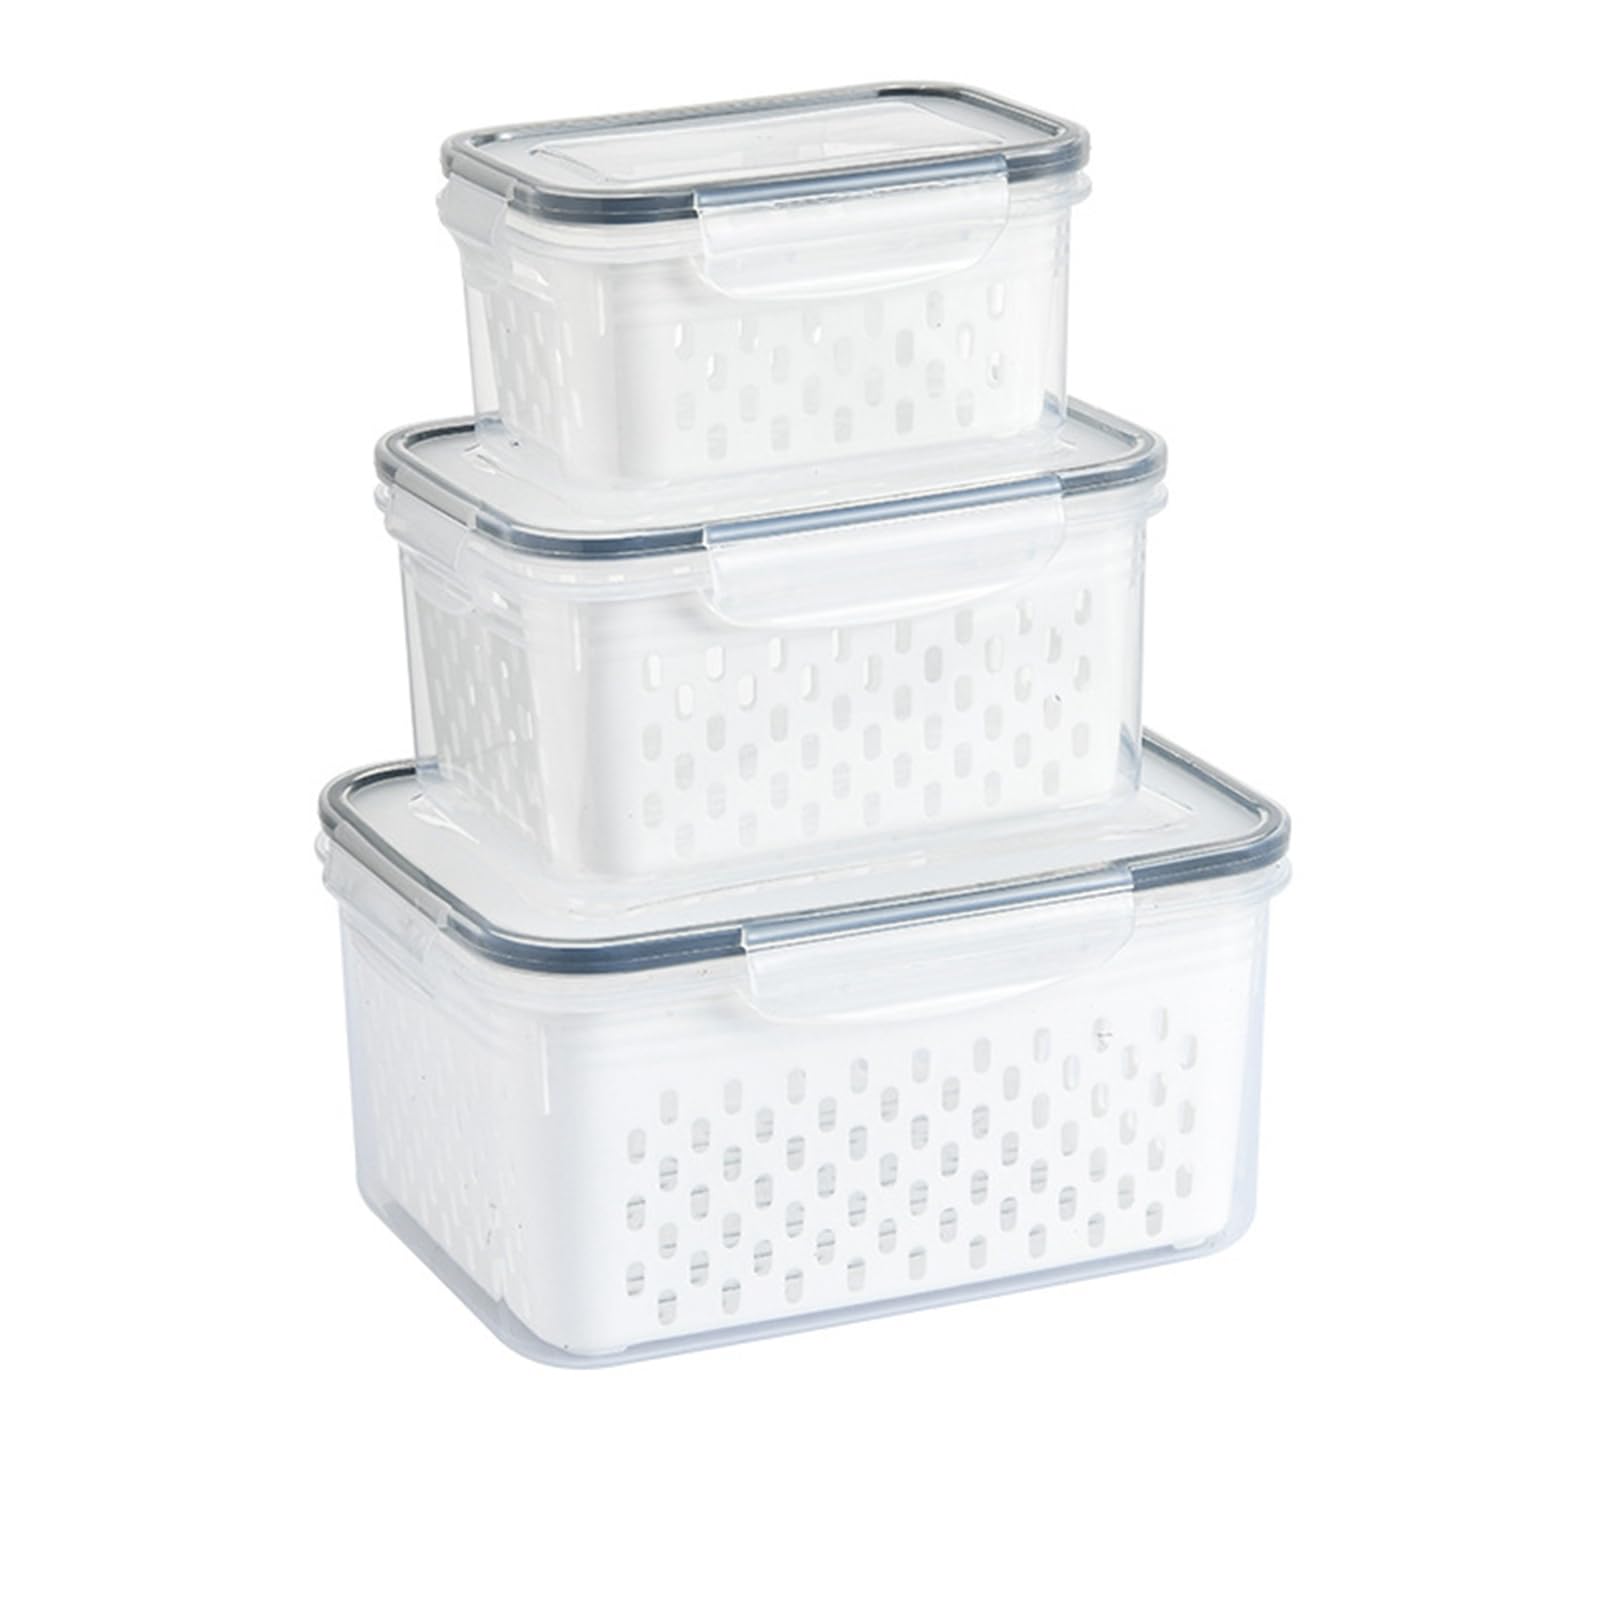 冷蔵庫オーガナイザーボックス、排水保管バスケットボックス3個、透明プラスチック食品保存容器セット、取り外し可能なザル付き漏れ防止食品容器、パントリー、冷凍庫、キッチン用